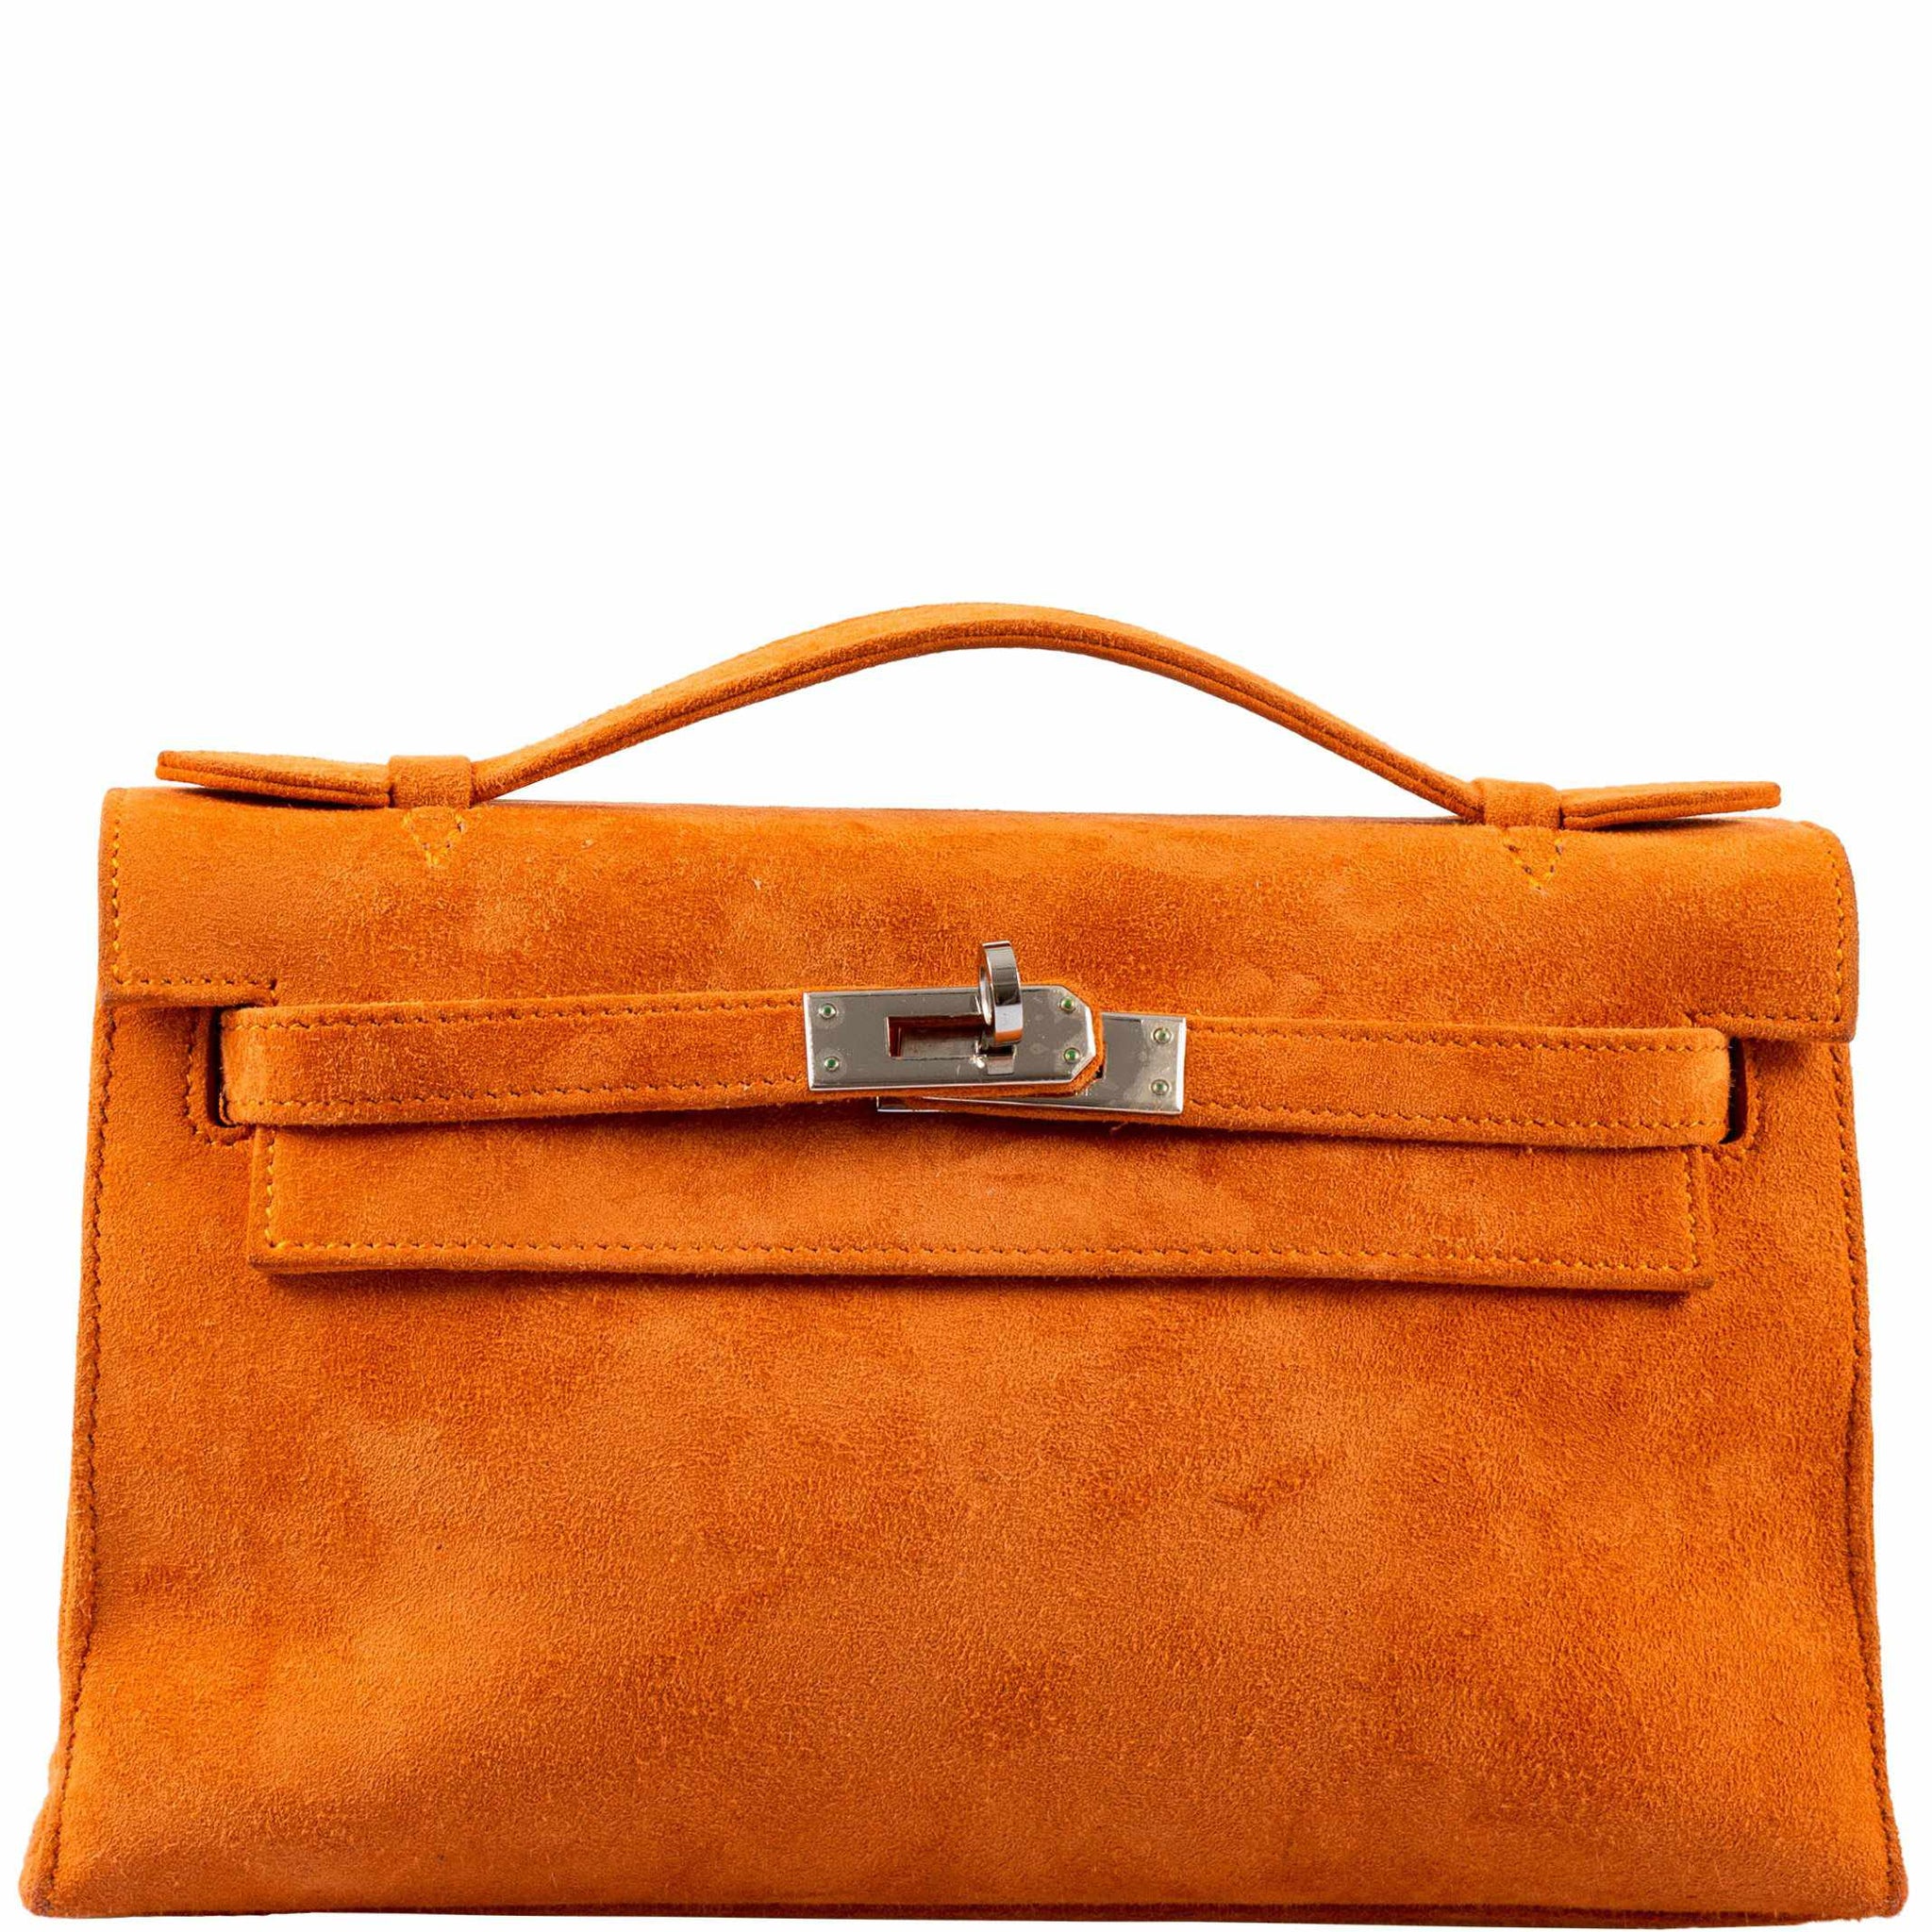 Hermes Kelly Sellier 25 Terre Cuite Handbag